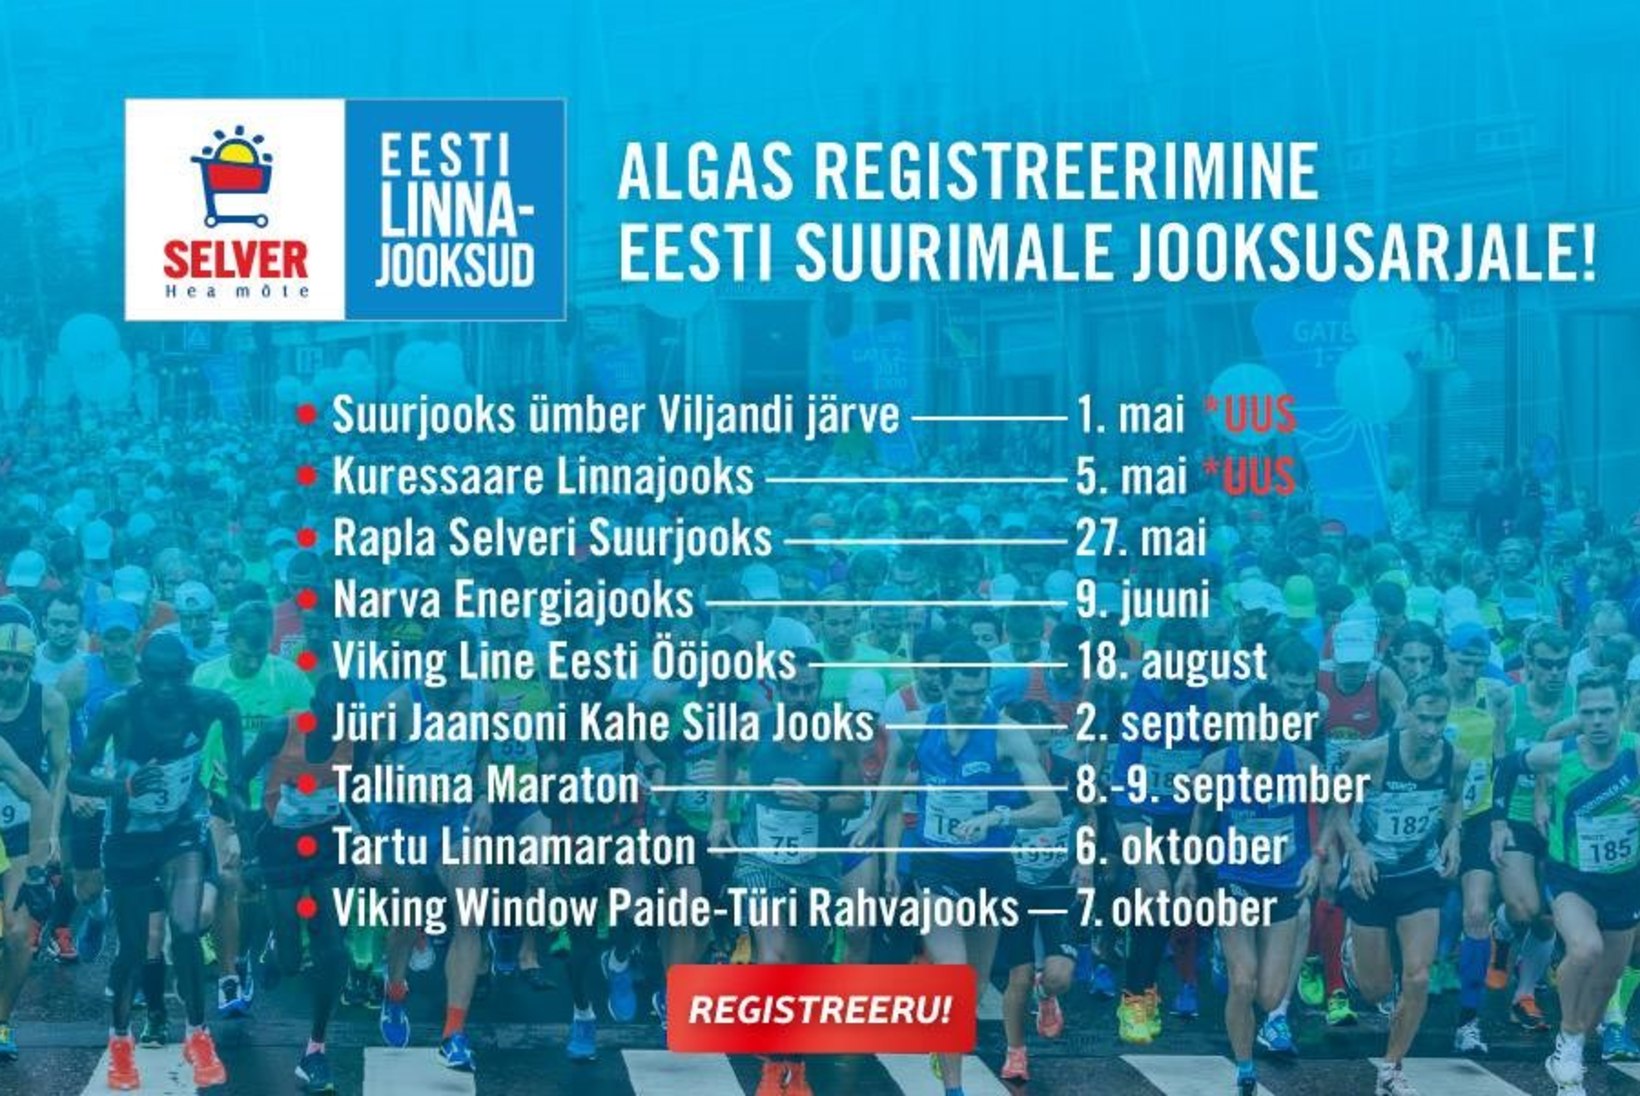 Algas registreerimine Selver Eesti Linnajooksude uuele hooajale!